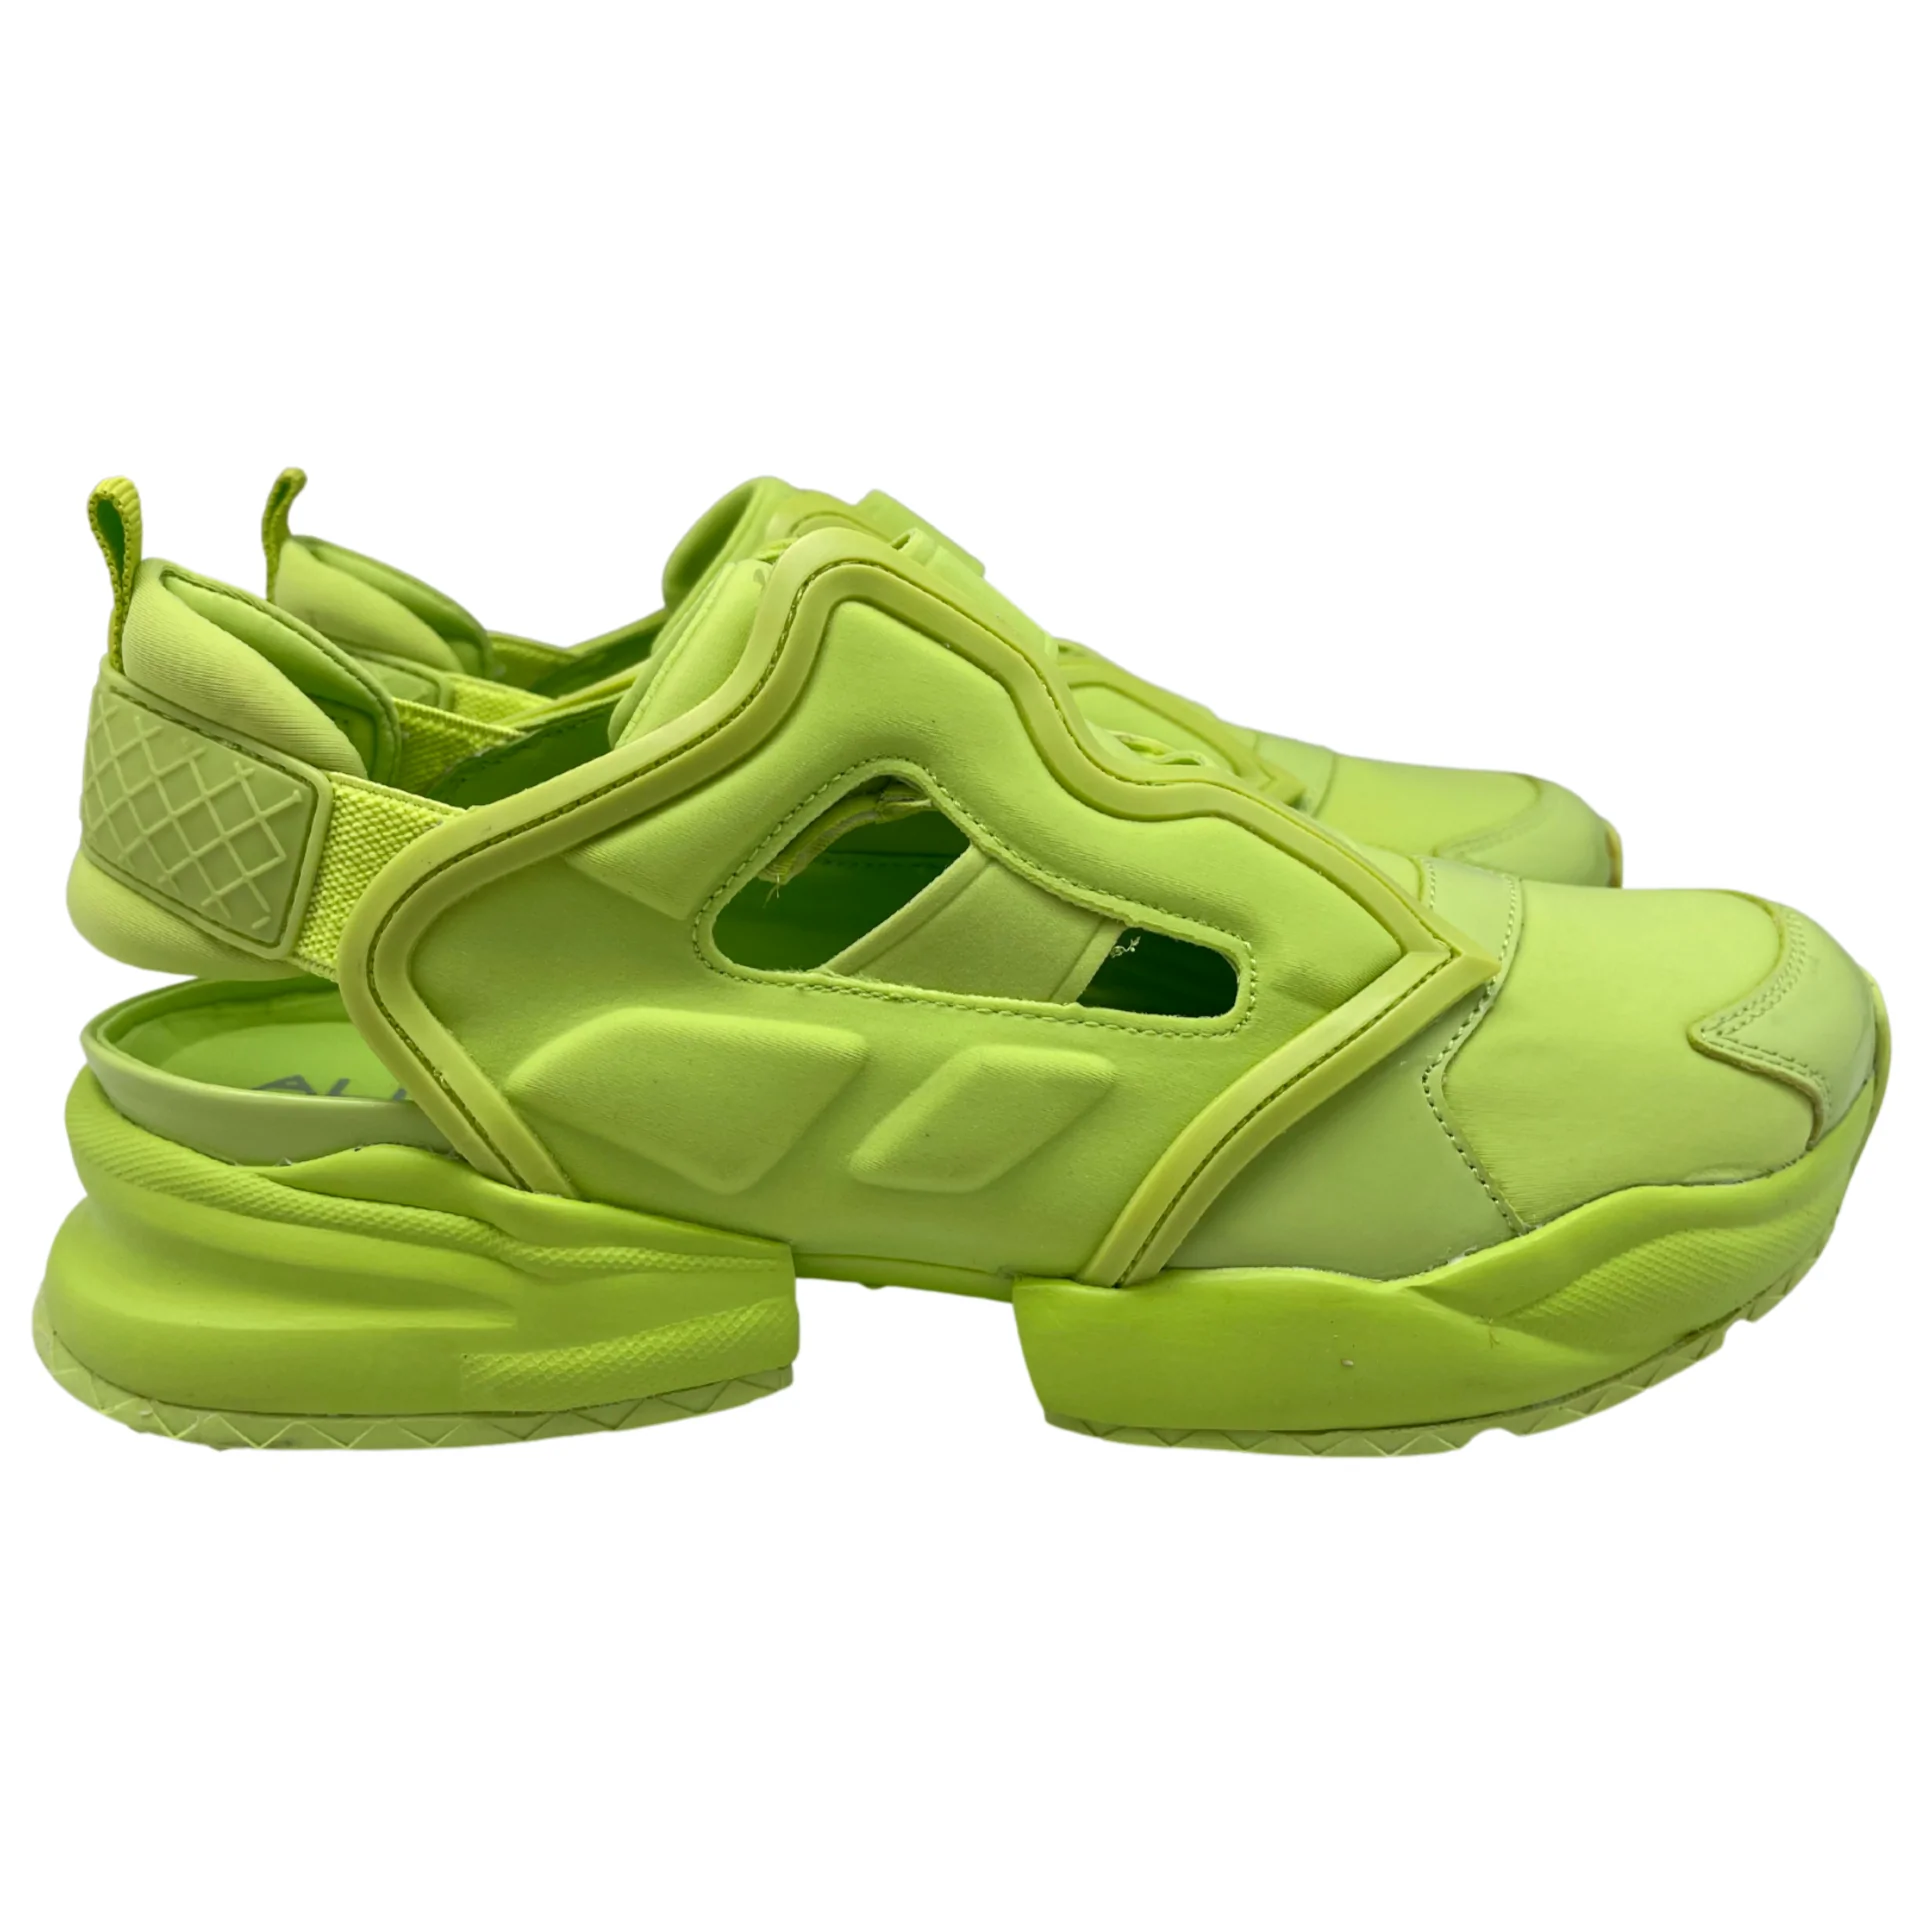 Aldo Sneaker Sandal Shoe / Zeldee / Bright Yellow / Size 8